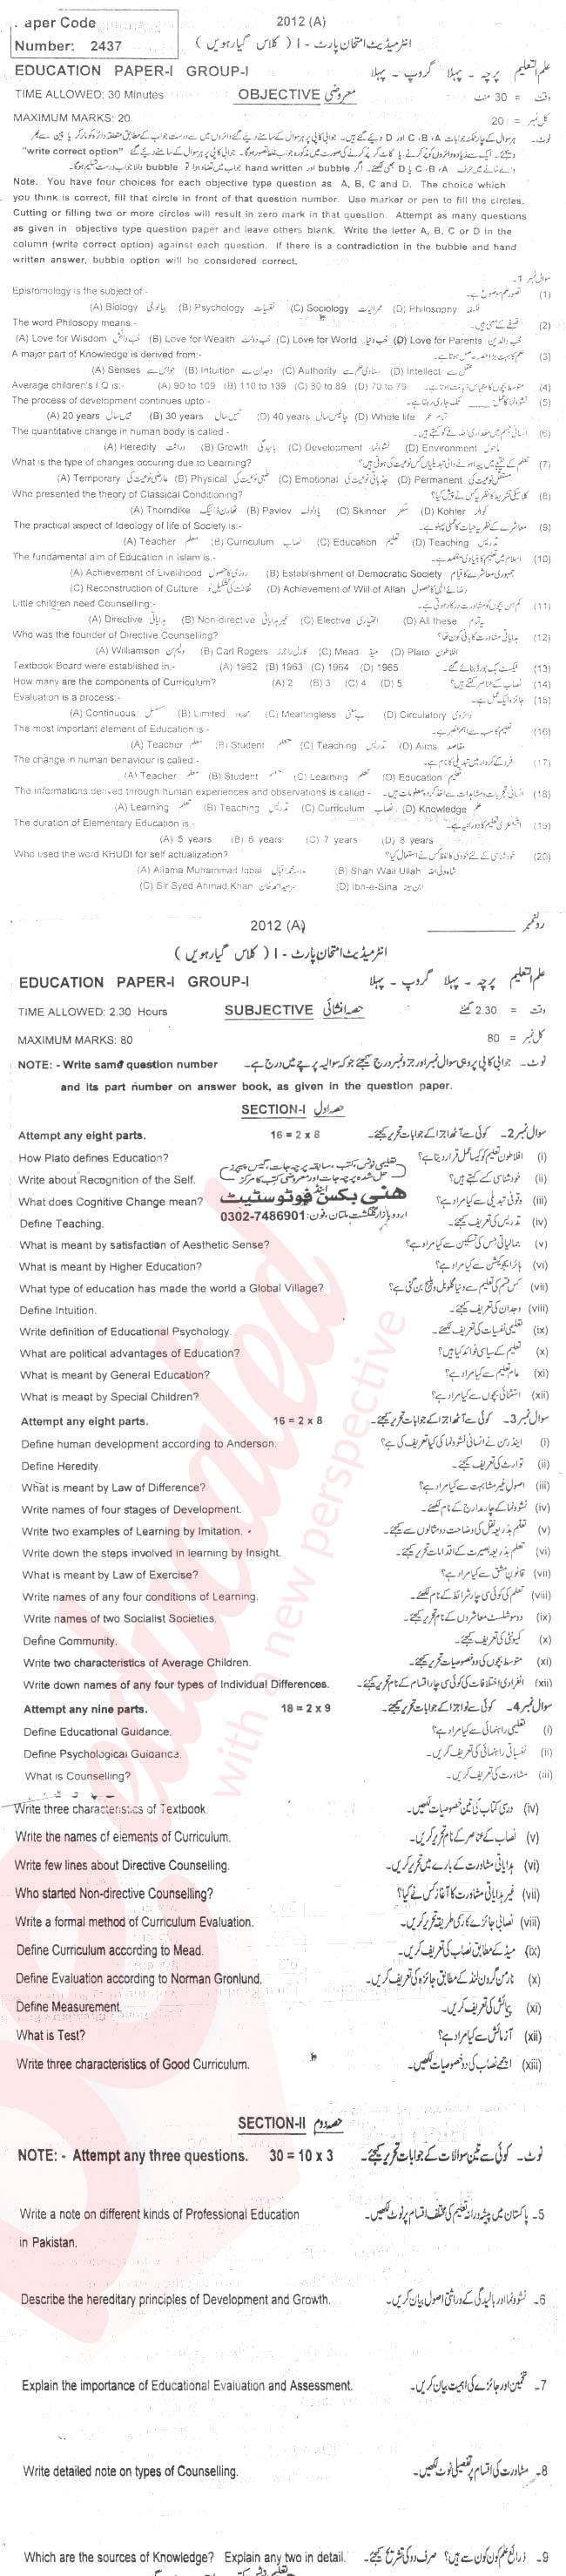 Education FA Part 1 Past Paper Group 1 BISE Multan 2012